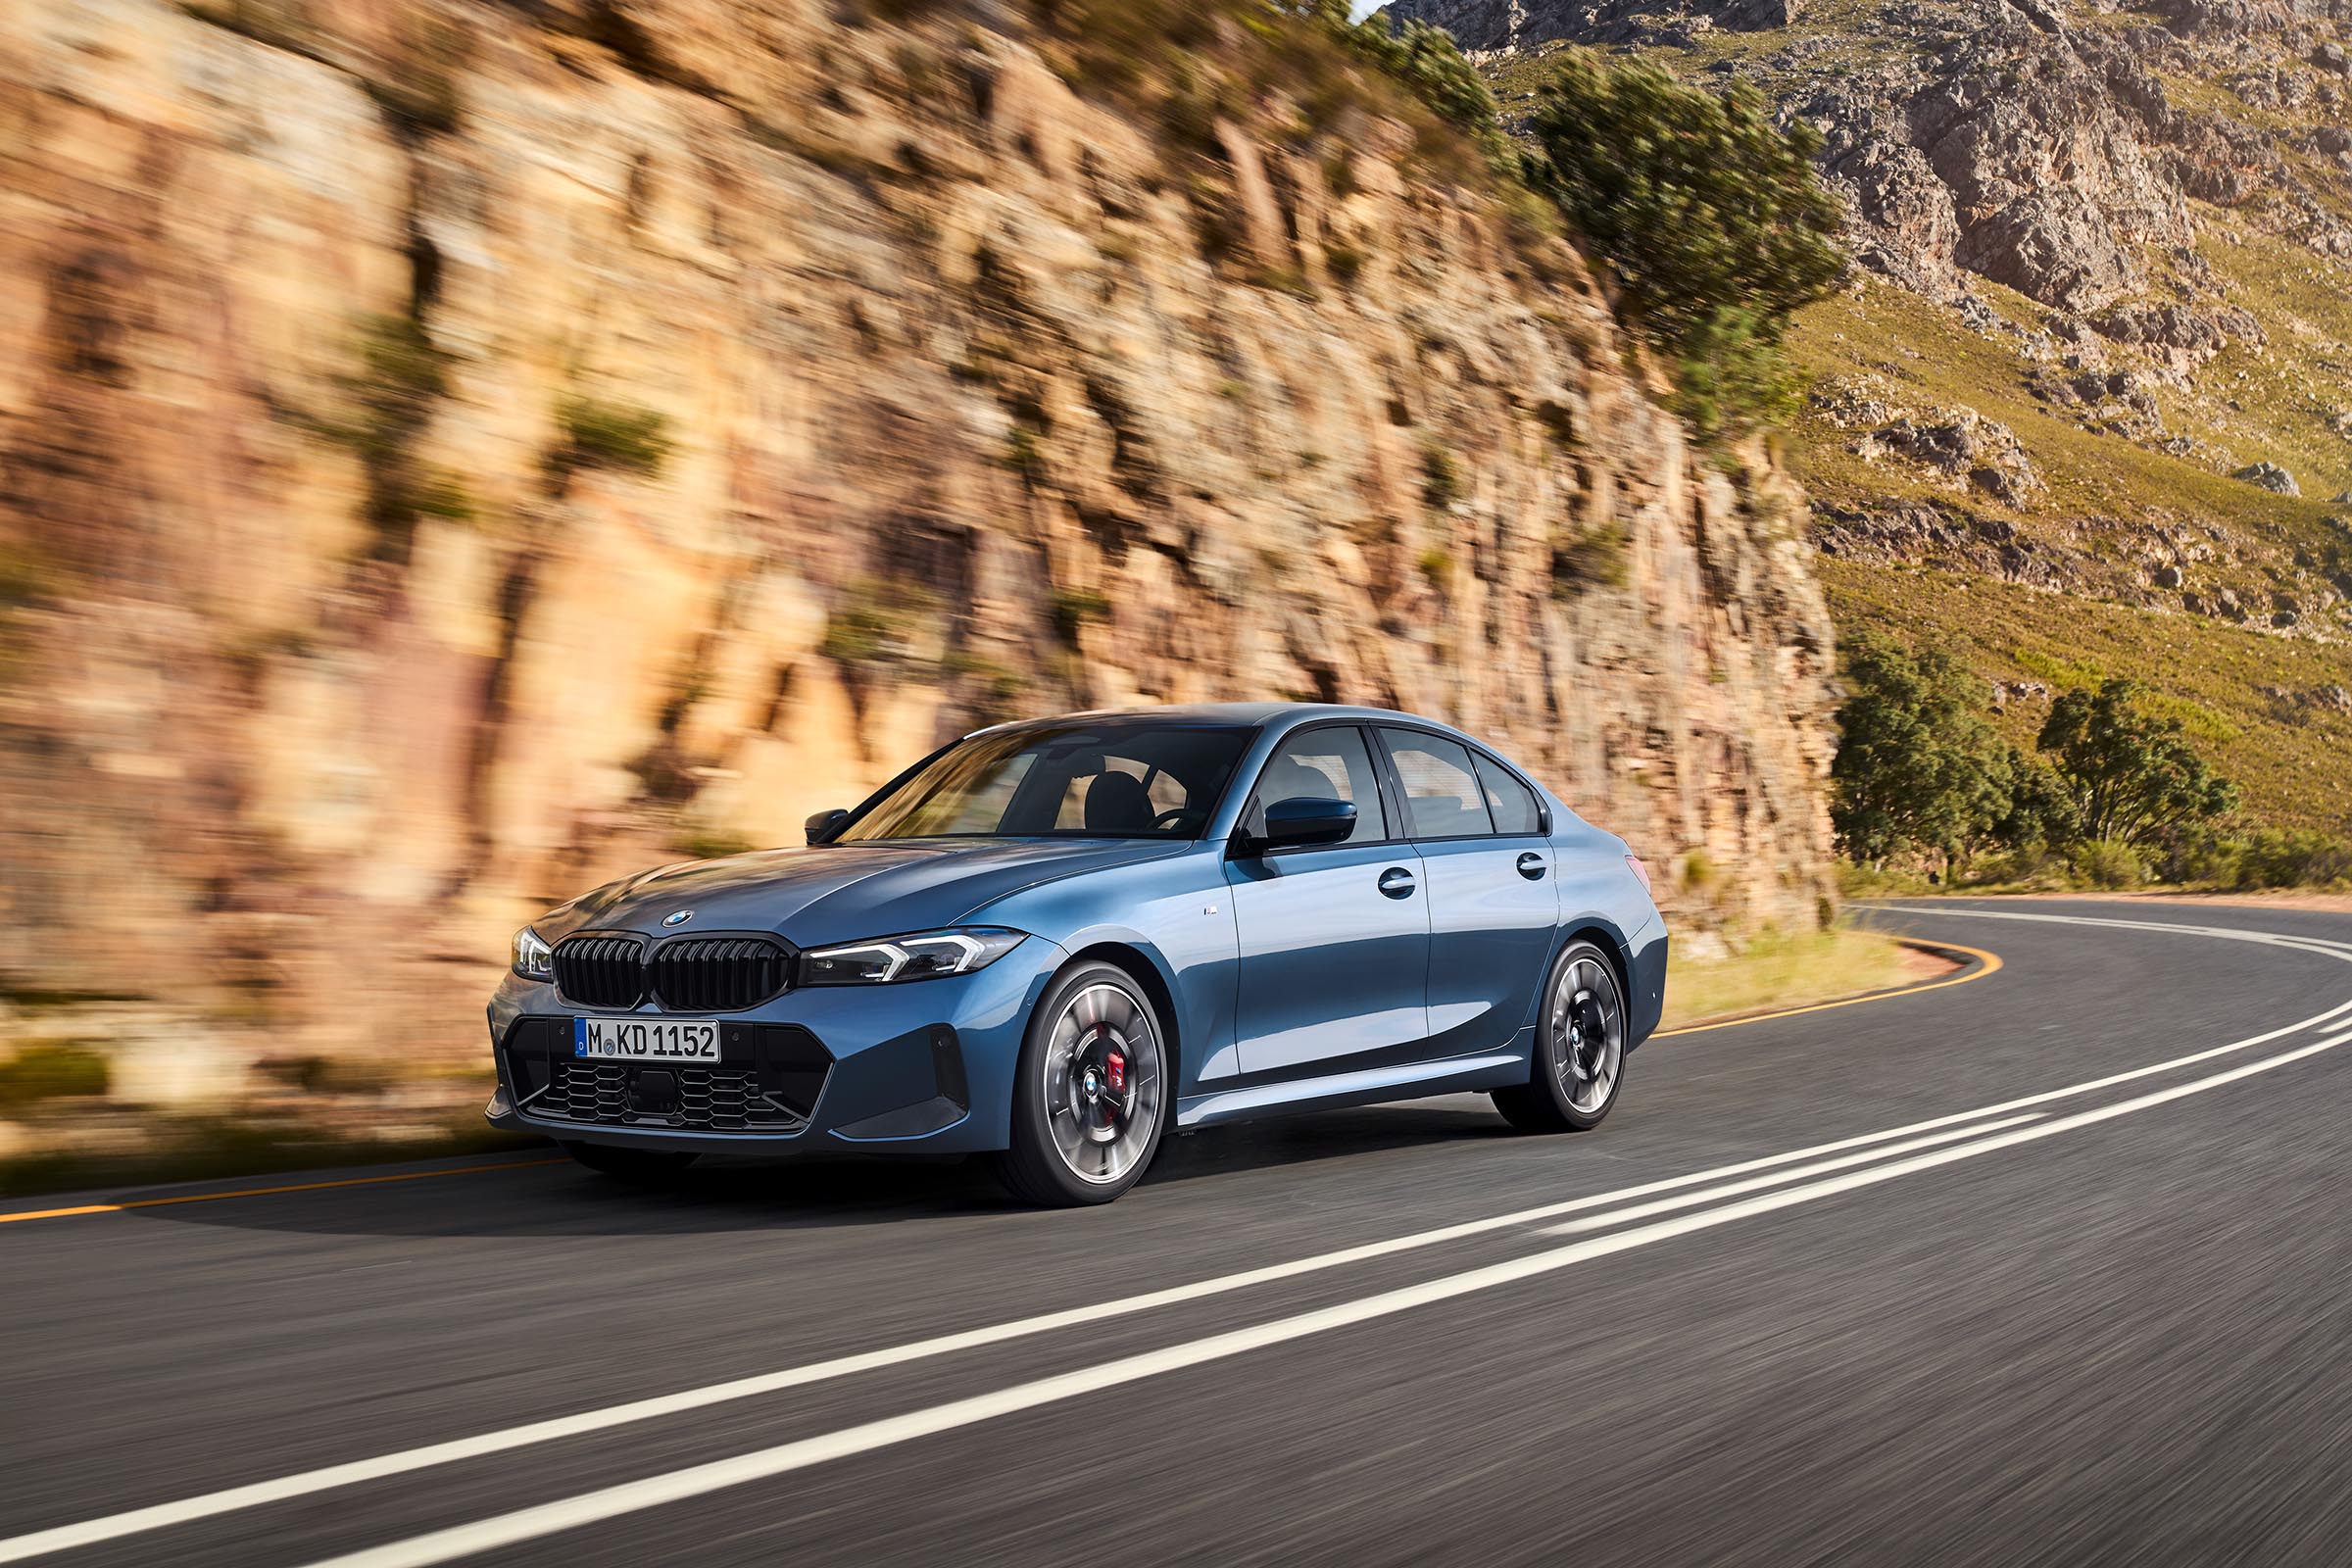 2025-BMW-3-Series-front-3-4-driving2025-BMW-3-Series-front-3-4-driving